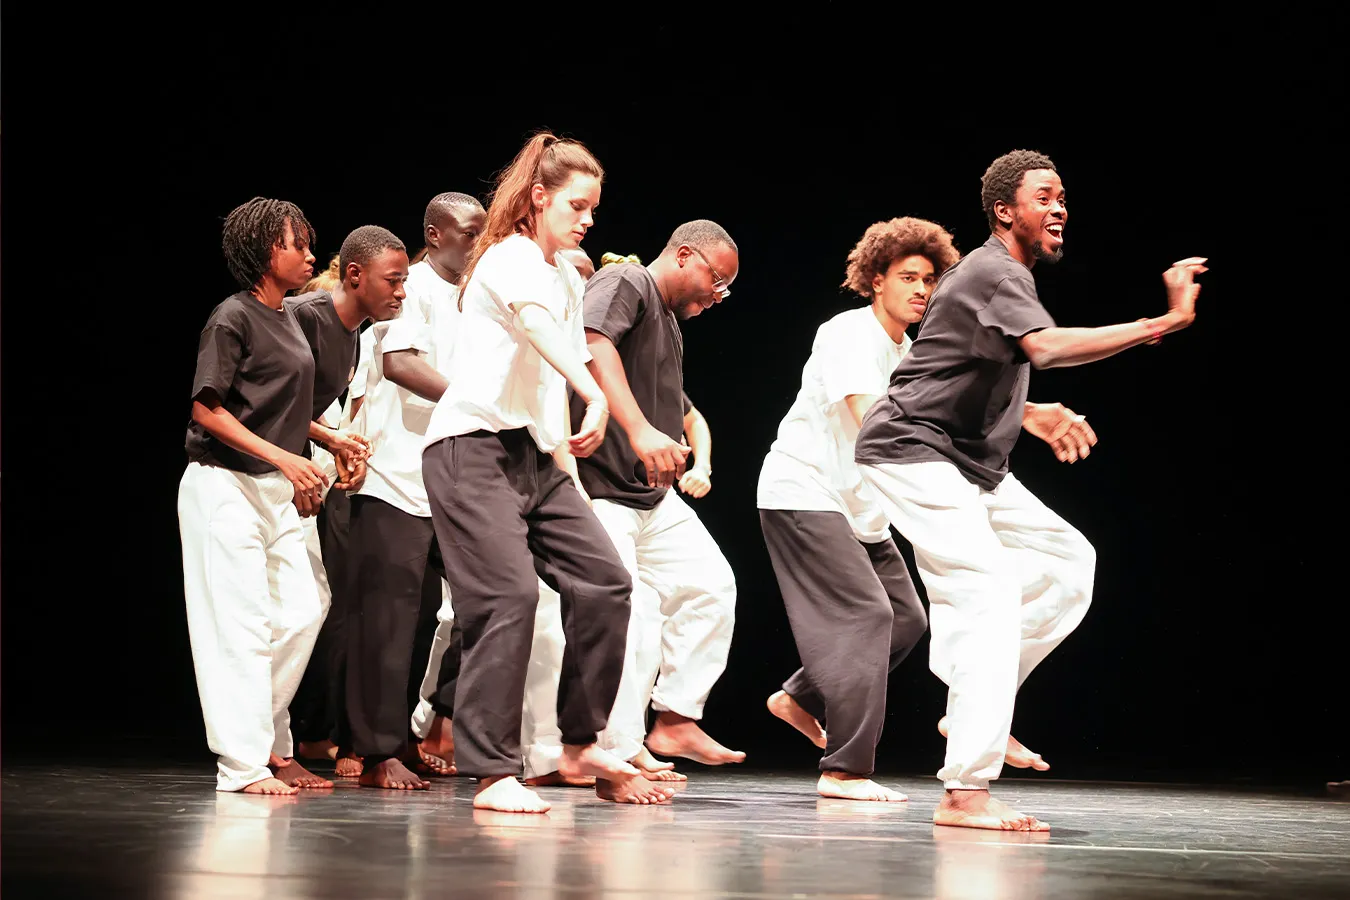 La photo montre un groupe de jeunes gens lors d'une représentation de danse. Ils sont habillés de noir et de blanc et sont en mouvement.